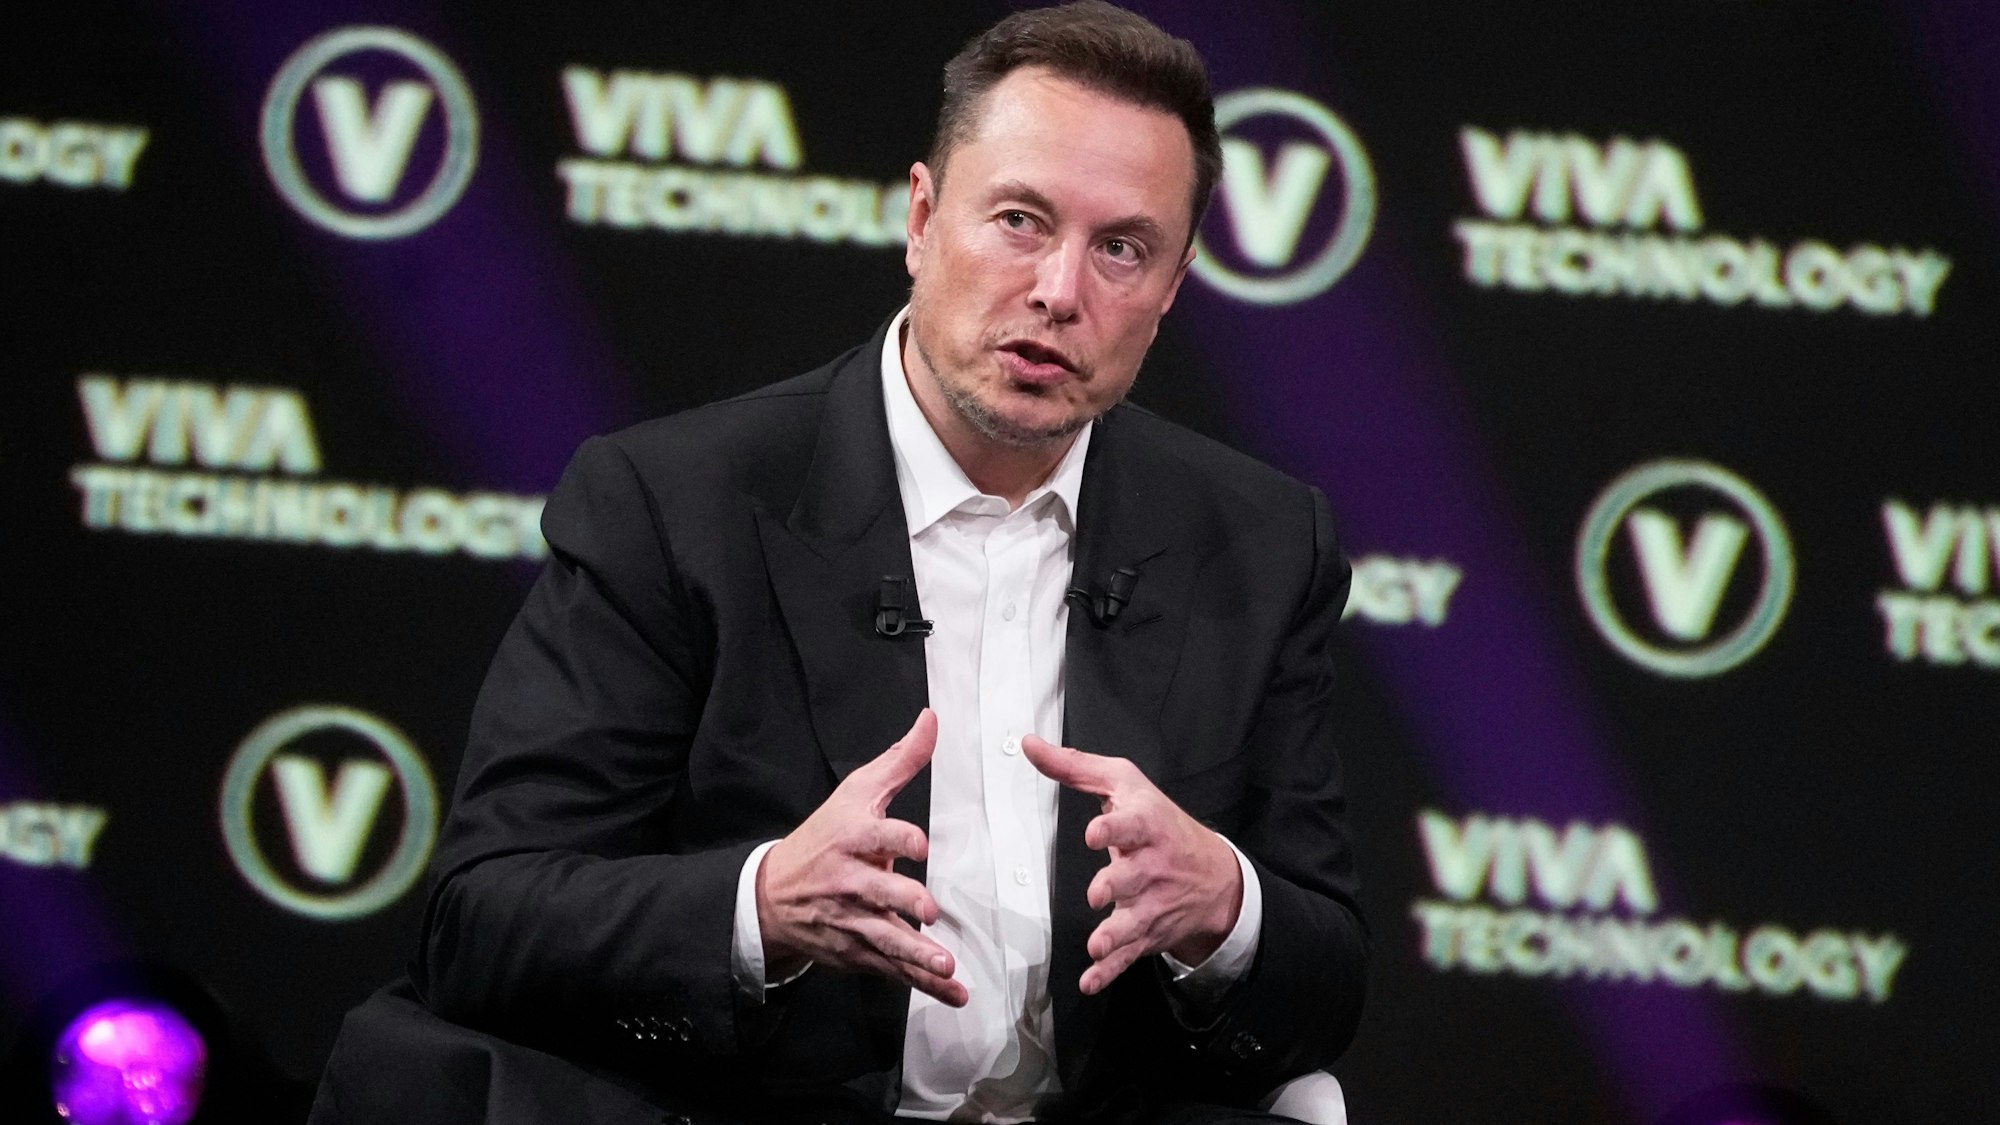 Elon Musk im Anzug und Hemd vor einer Leinwand mit der Aufschrift "Viva Technology"